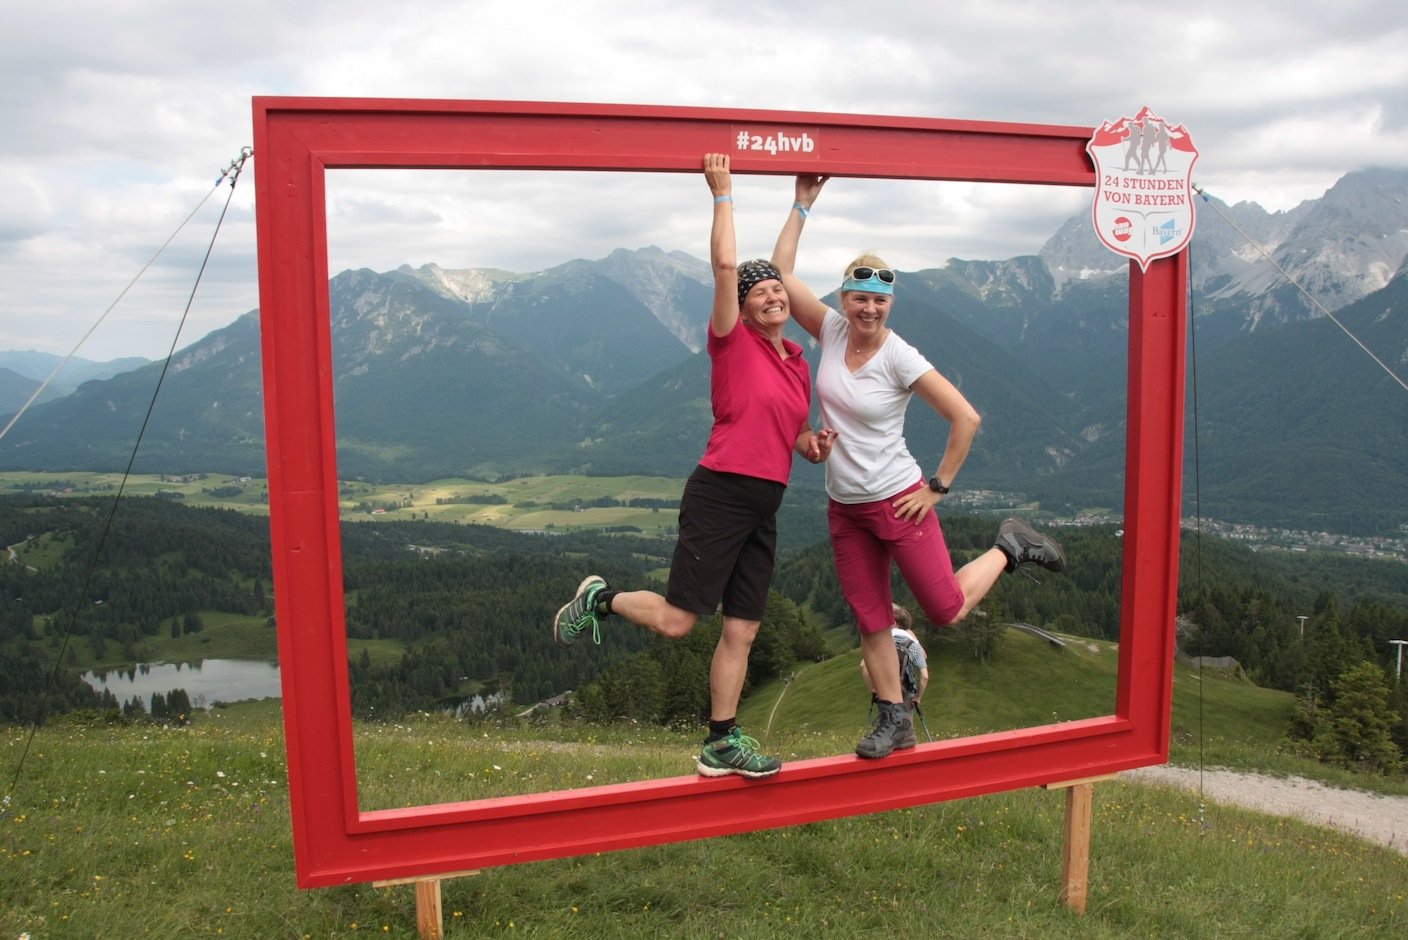 Eventbericht – 24 Stunden von Bayern 2016: Aller guten Dinge sind drei – Kilometerschrubben in der Alpenwelt Karwendel